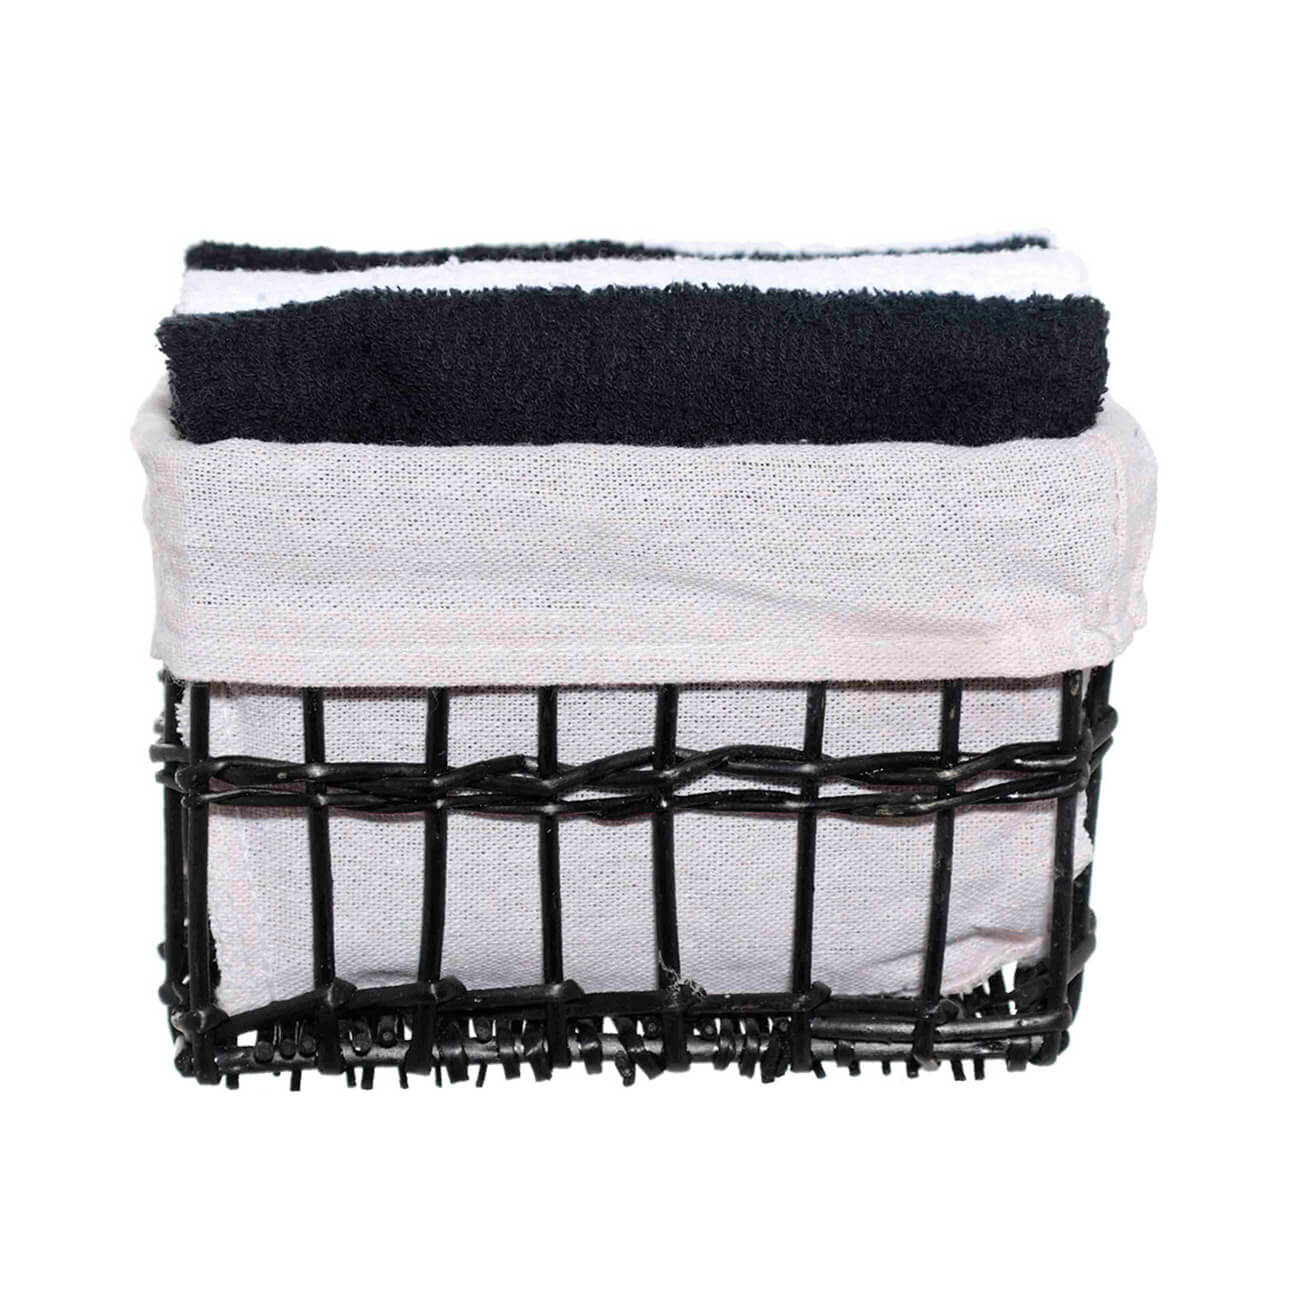 полотенце одноразовое оптима 35 гр м2 белое индивидуальное сложение 35x70 см 50 шт уп Полотенце, 30х30 см, 4 шт, в корзине, хлопок/лоза, черное/белое, Basket towel